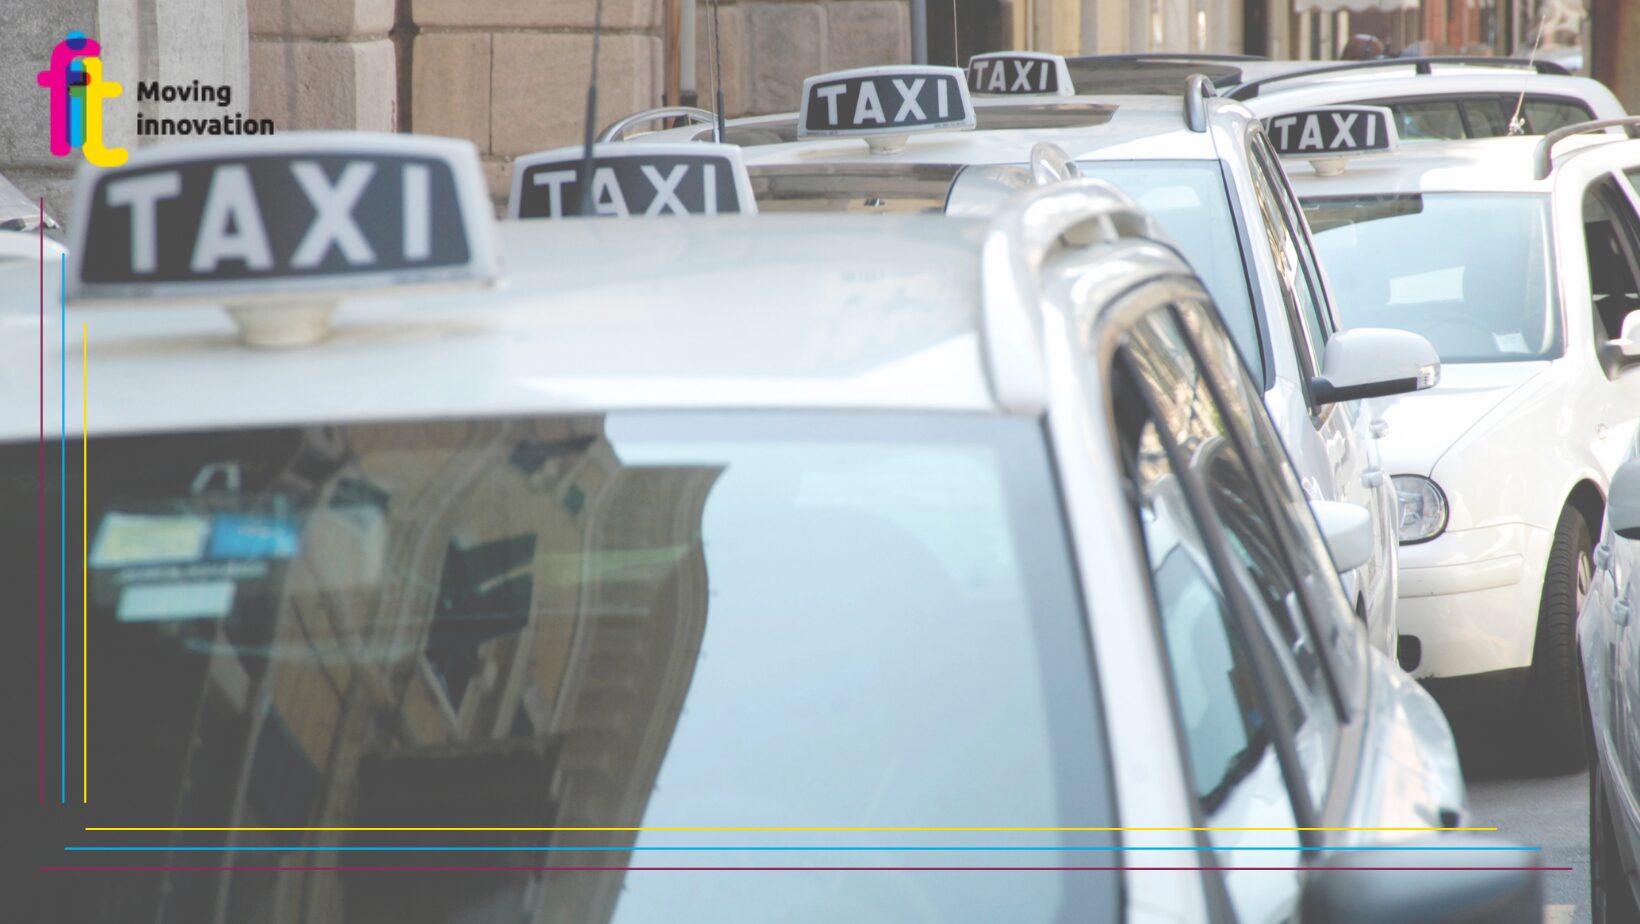 Il Comune di Parma affida a FIT lo studio per la predisposizione del bando per il rilascio di nuove licenze Taxi